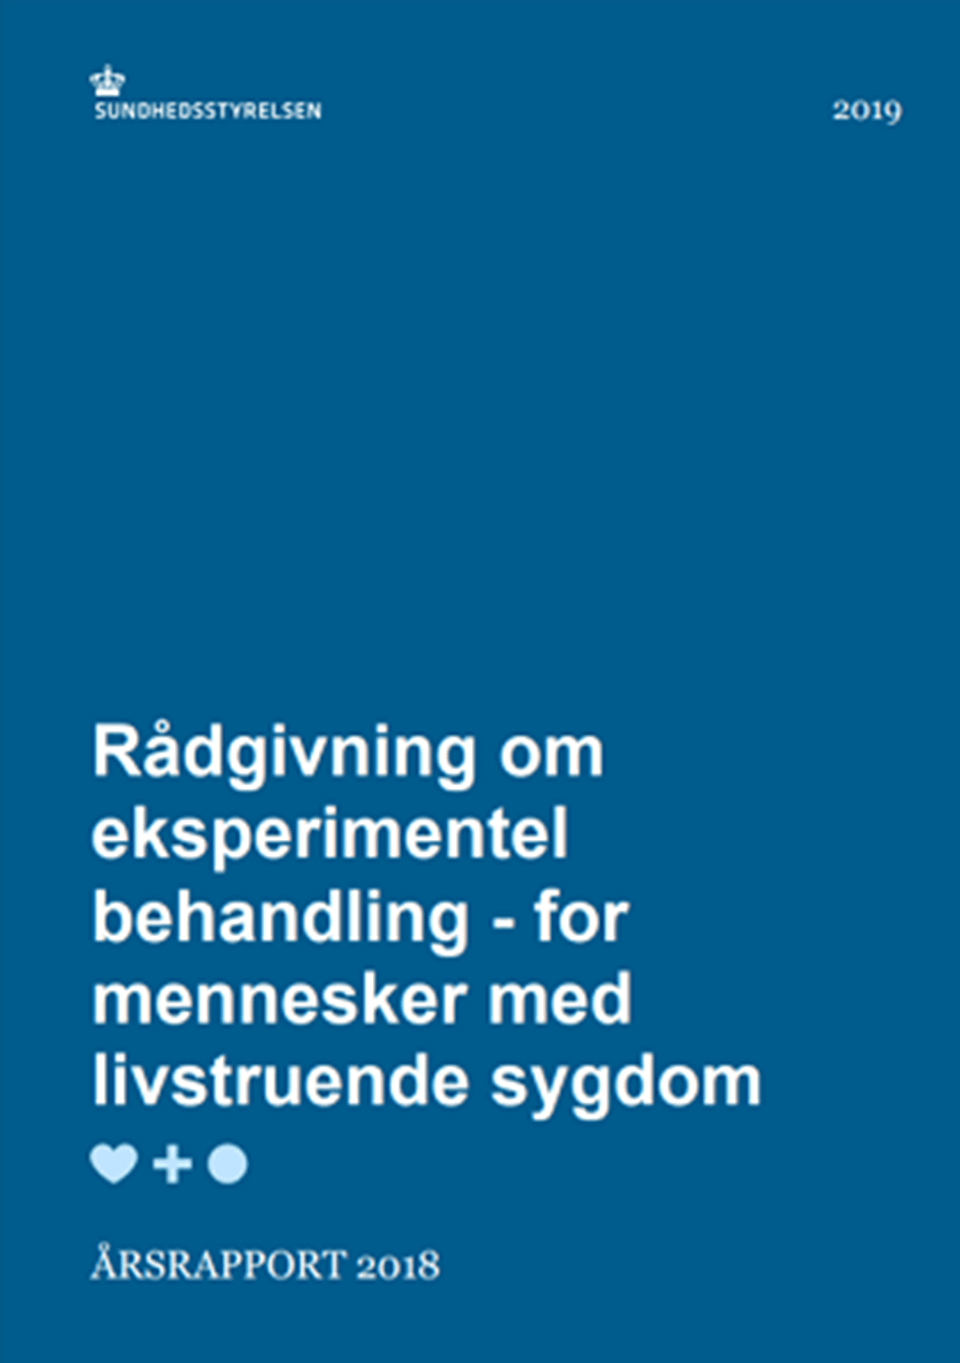 Rådgivning om eksperimentel behandling - for mennesker med livstruende sygdom. Årsrapport 2018